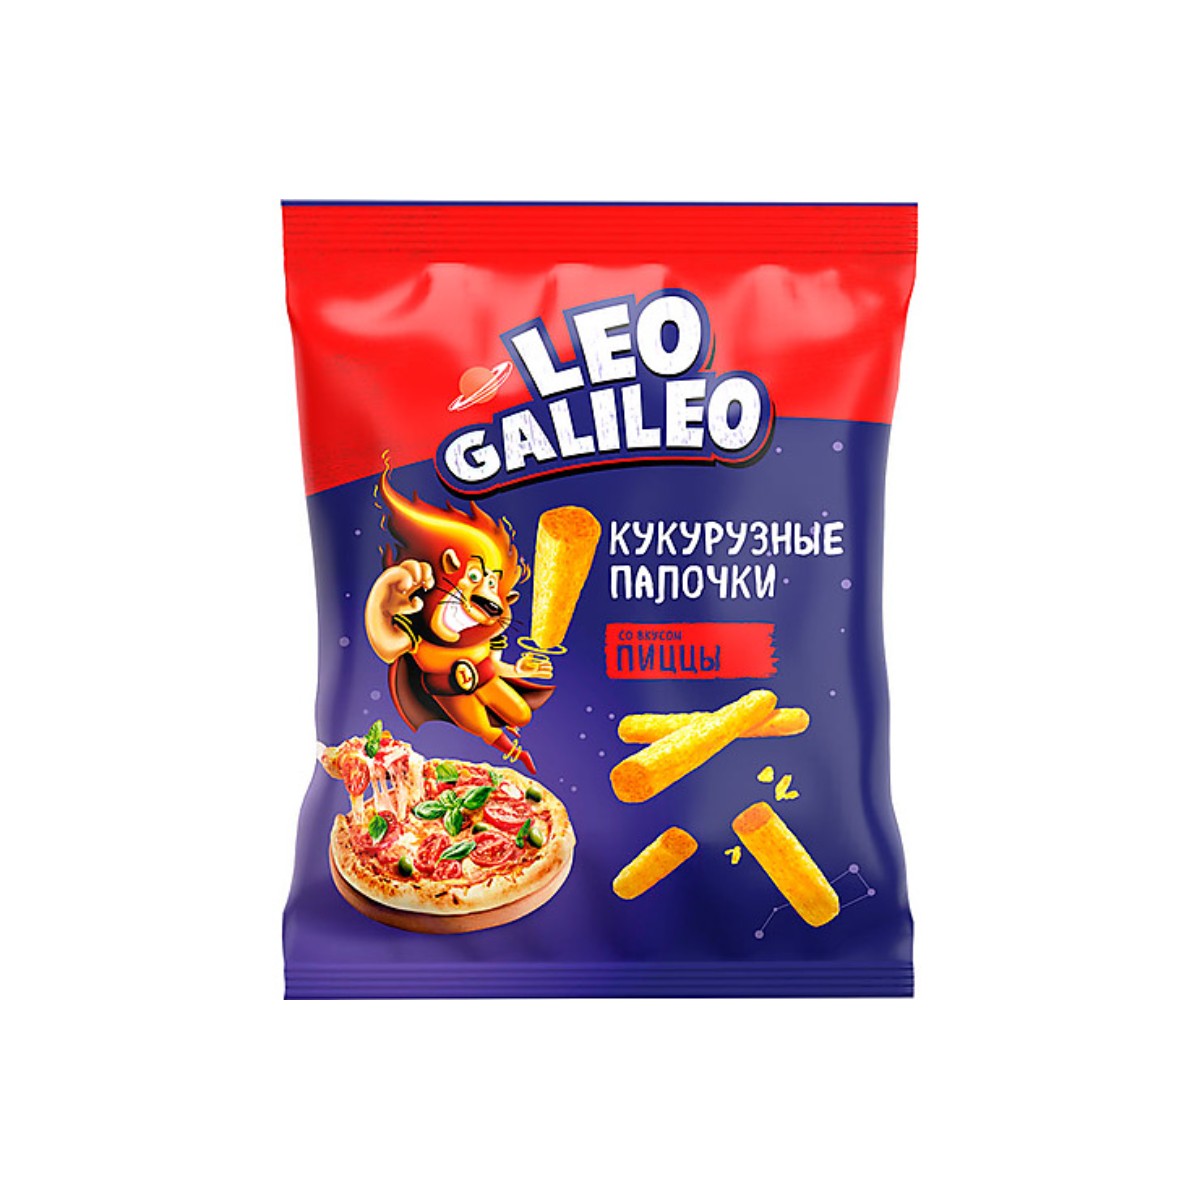 Кукурузные палочки Leo Galileo со вкусом пиццы, 8 шт по 45 г